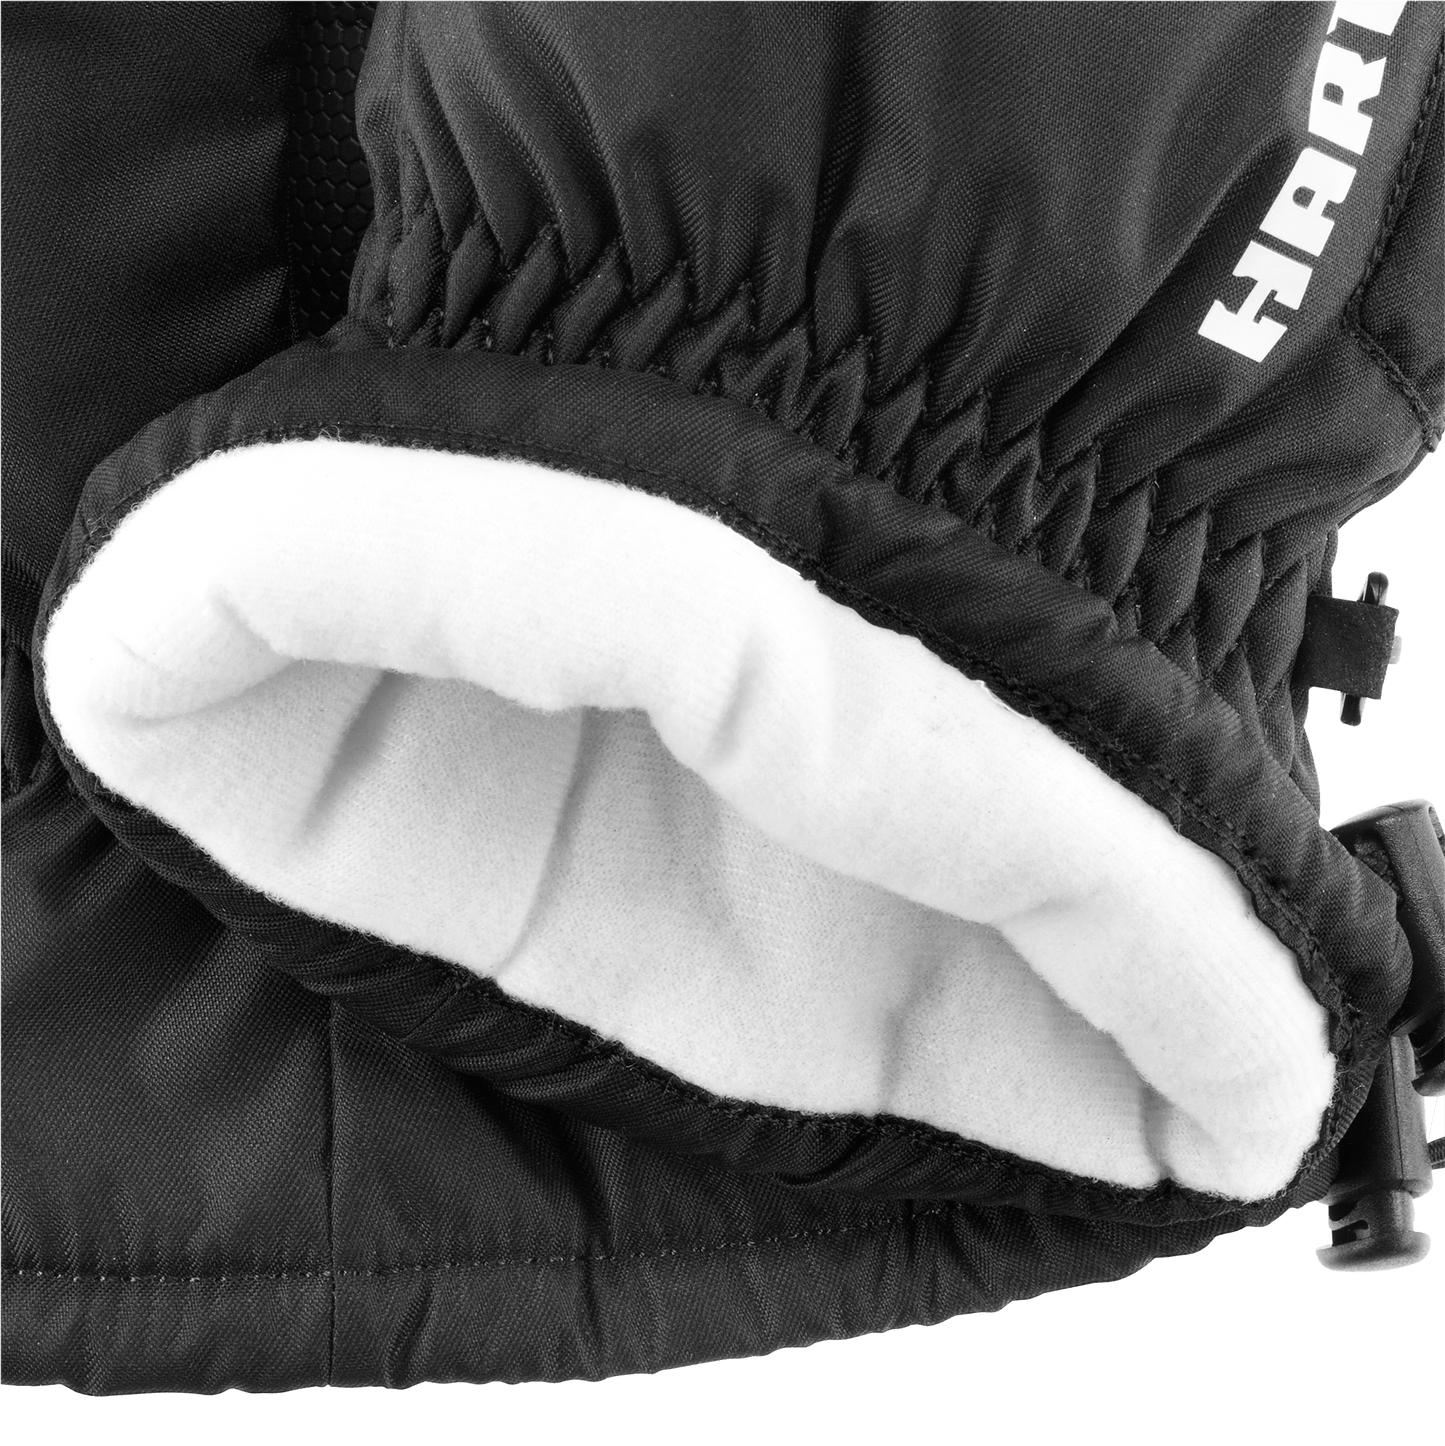 Winter Work Gloves - XL